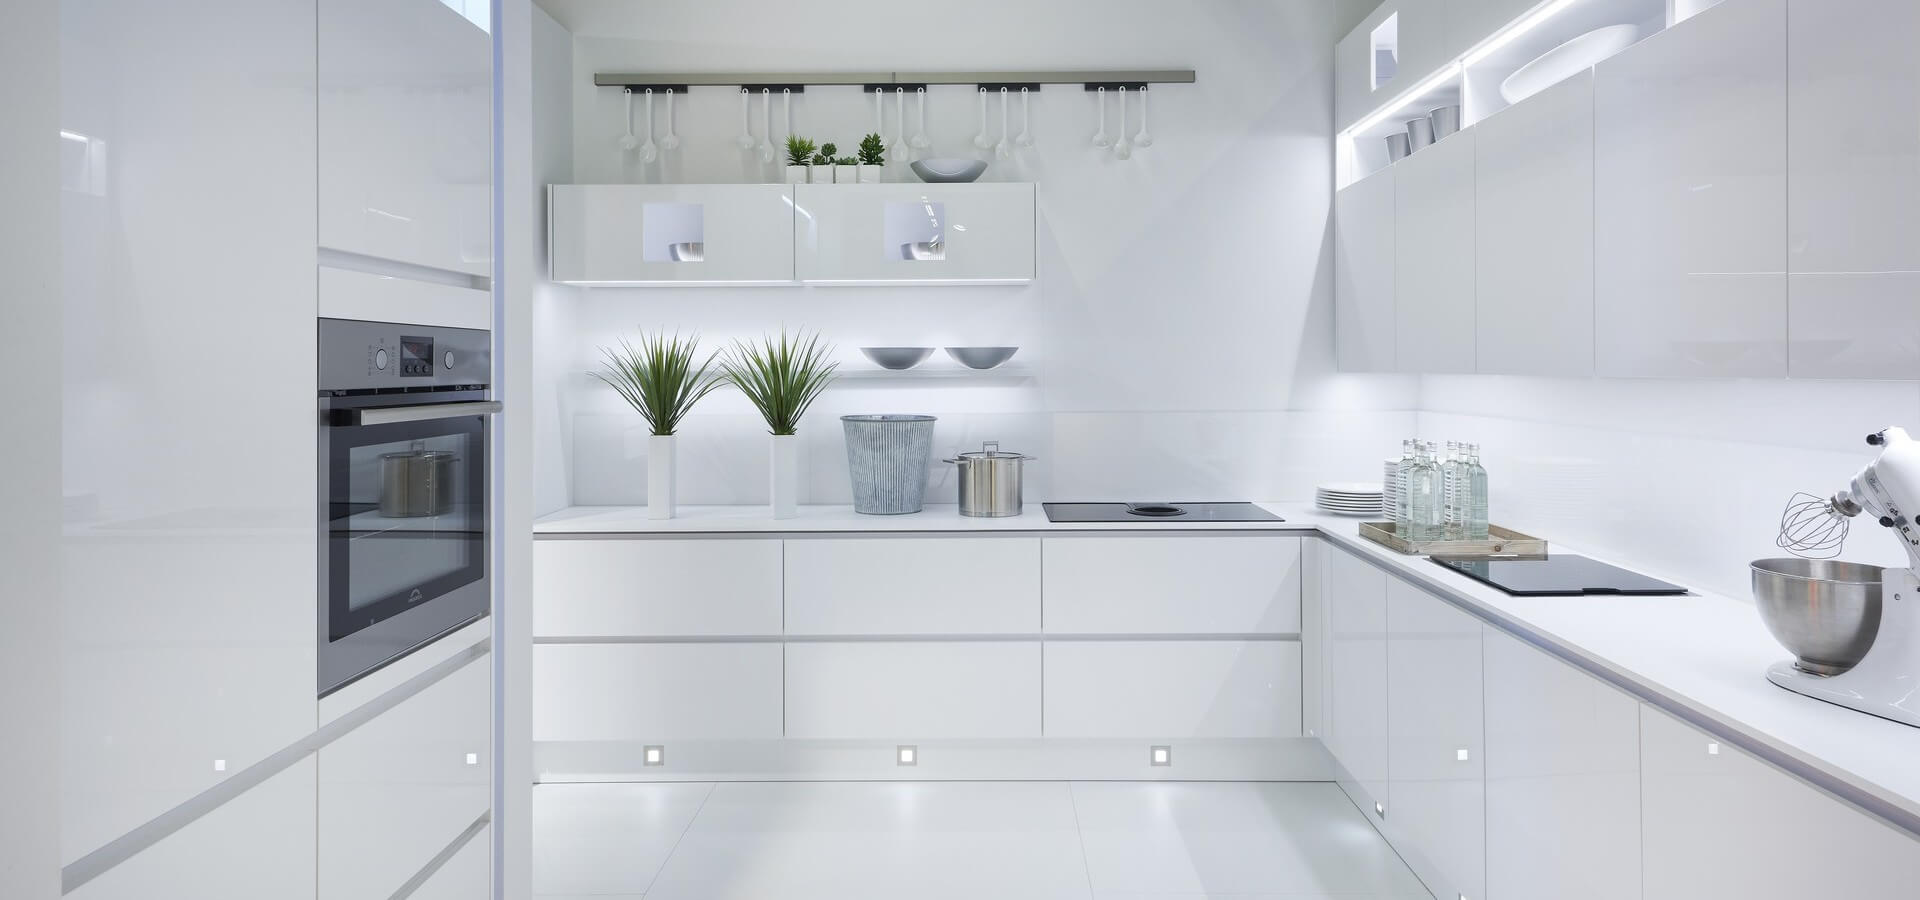 Стильная белая кухня с глянцевыми фасадами и подсветкой